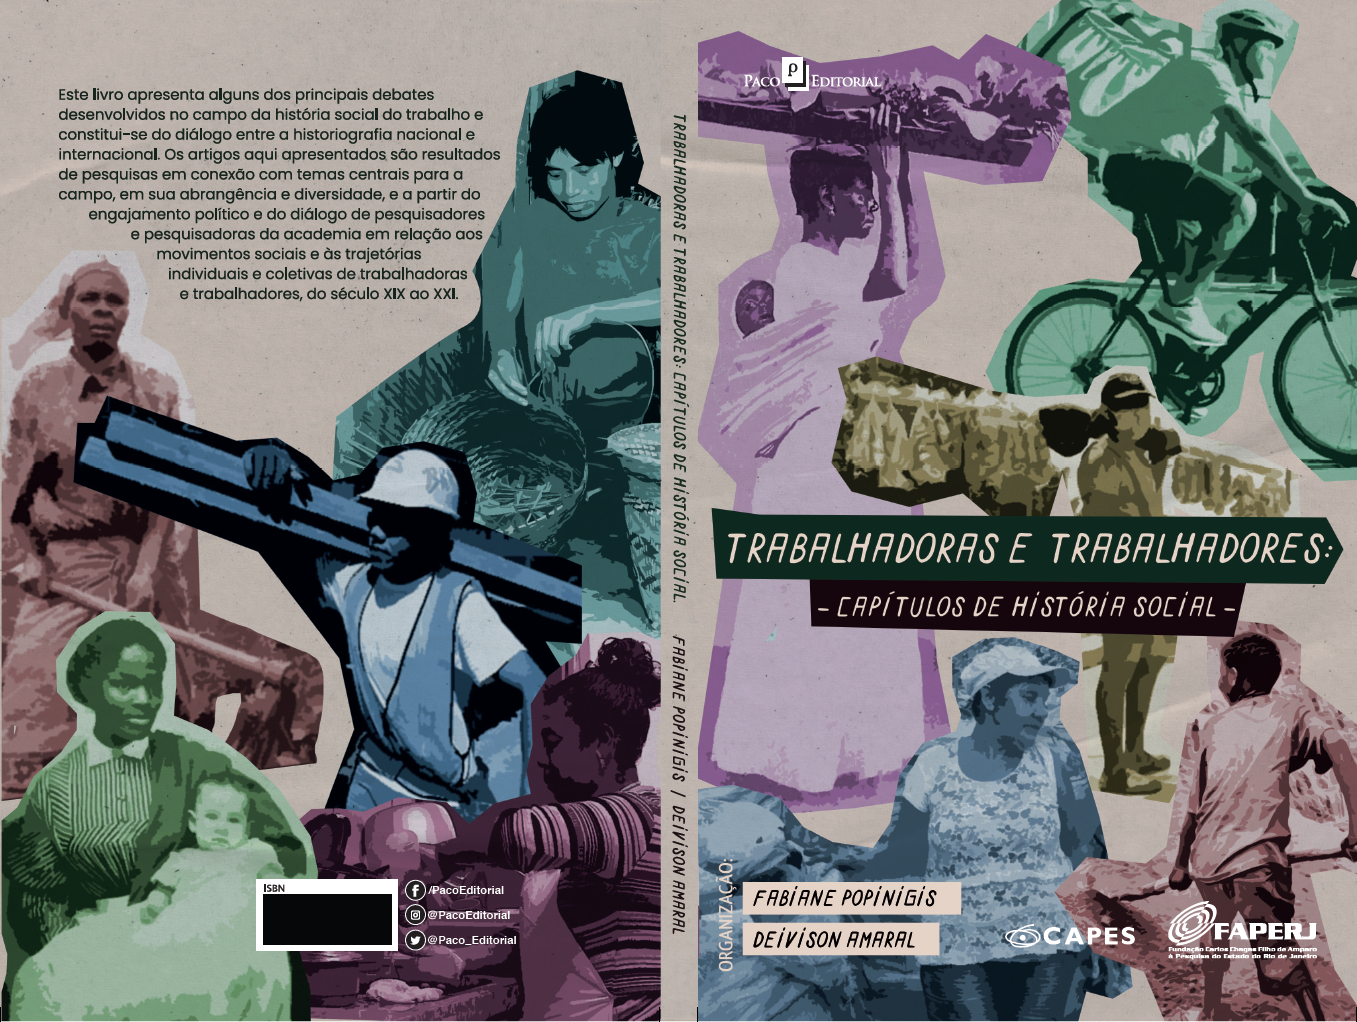 Livro “Trabalhadoras e trabalhadores: capítulos de história social”, organizado por Fabiane Popinigis e Deivison Amaral.